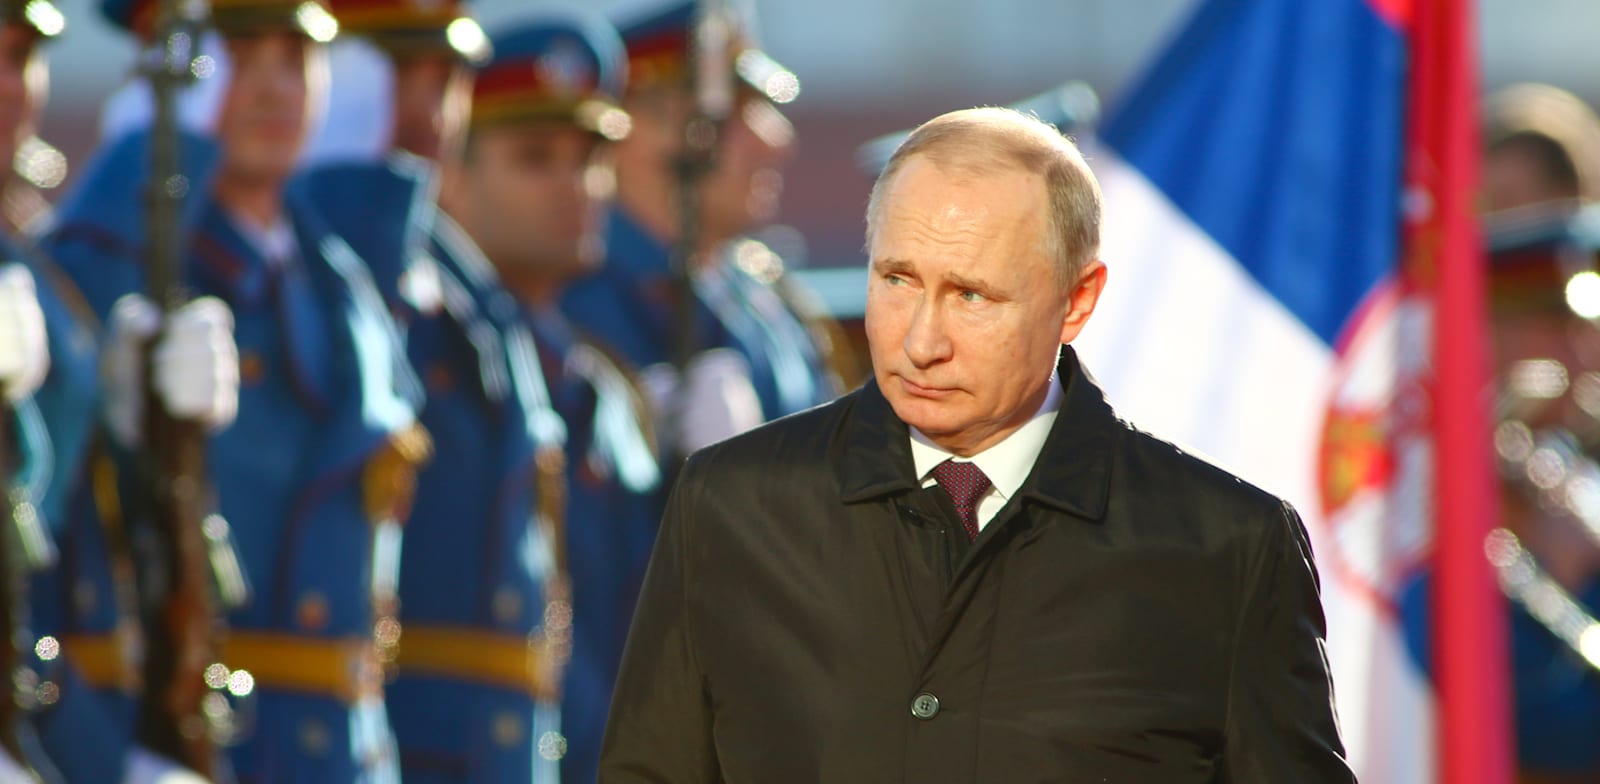 נשיא רוסיה, ולדימיר פוטין / צילום: Shutterstock, א.ס.א.פ קריאייטיב